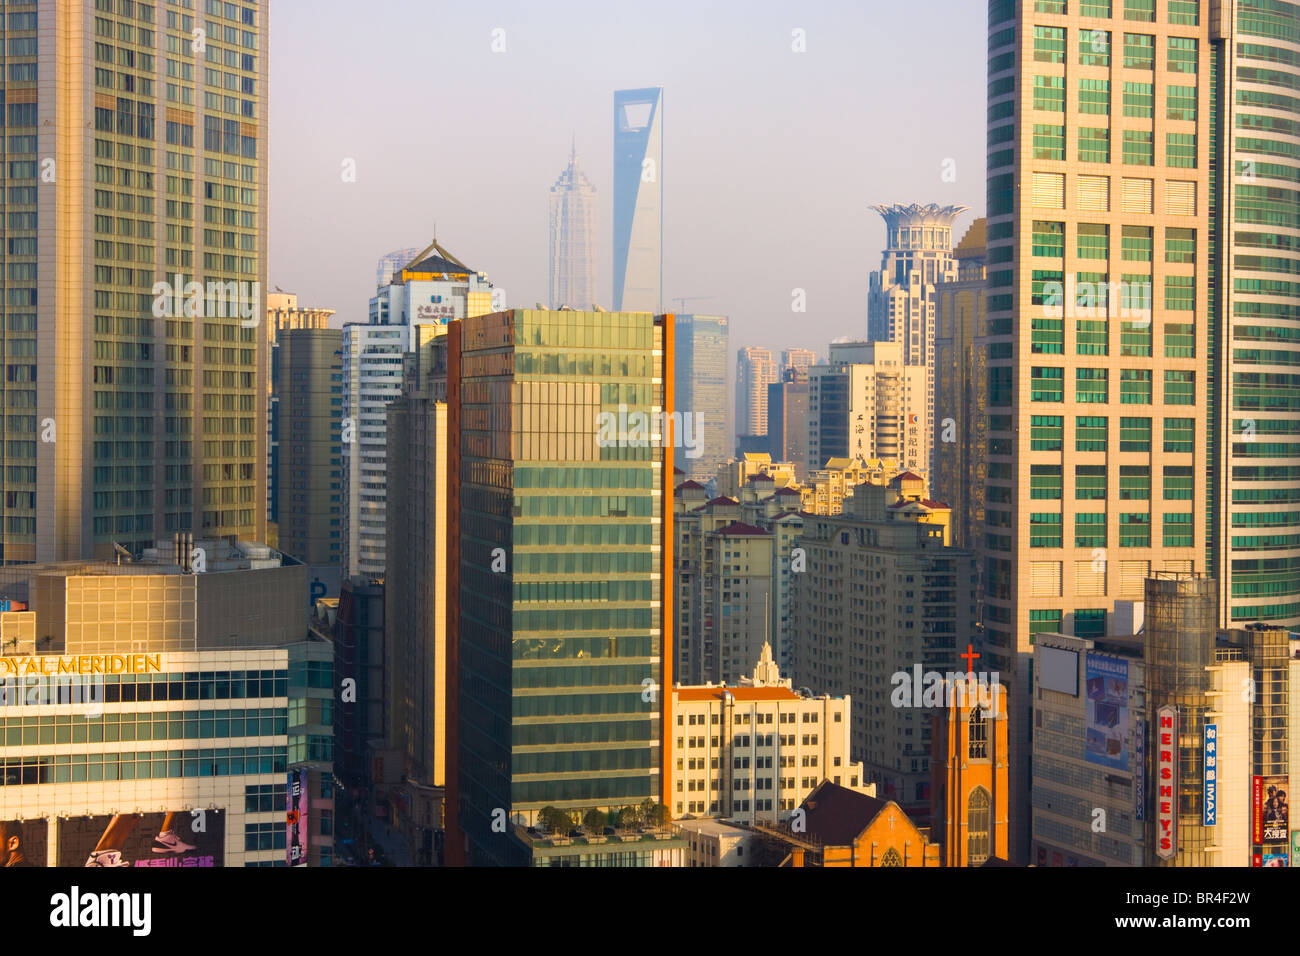 Skyline der Innenstadt, SWFC (Shanghai World Finance Center) und Jinmao-Gebäude in der Ferne, Shanghai, China Stockfoto